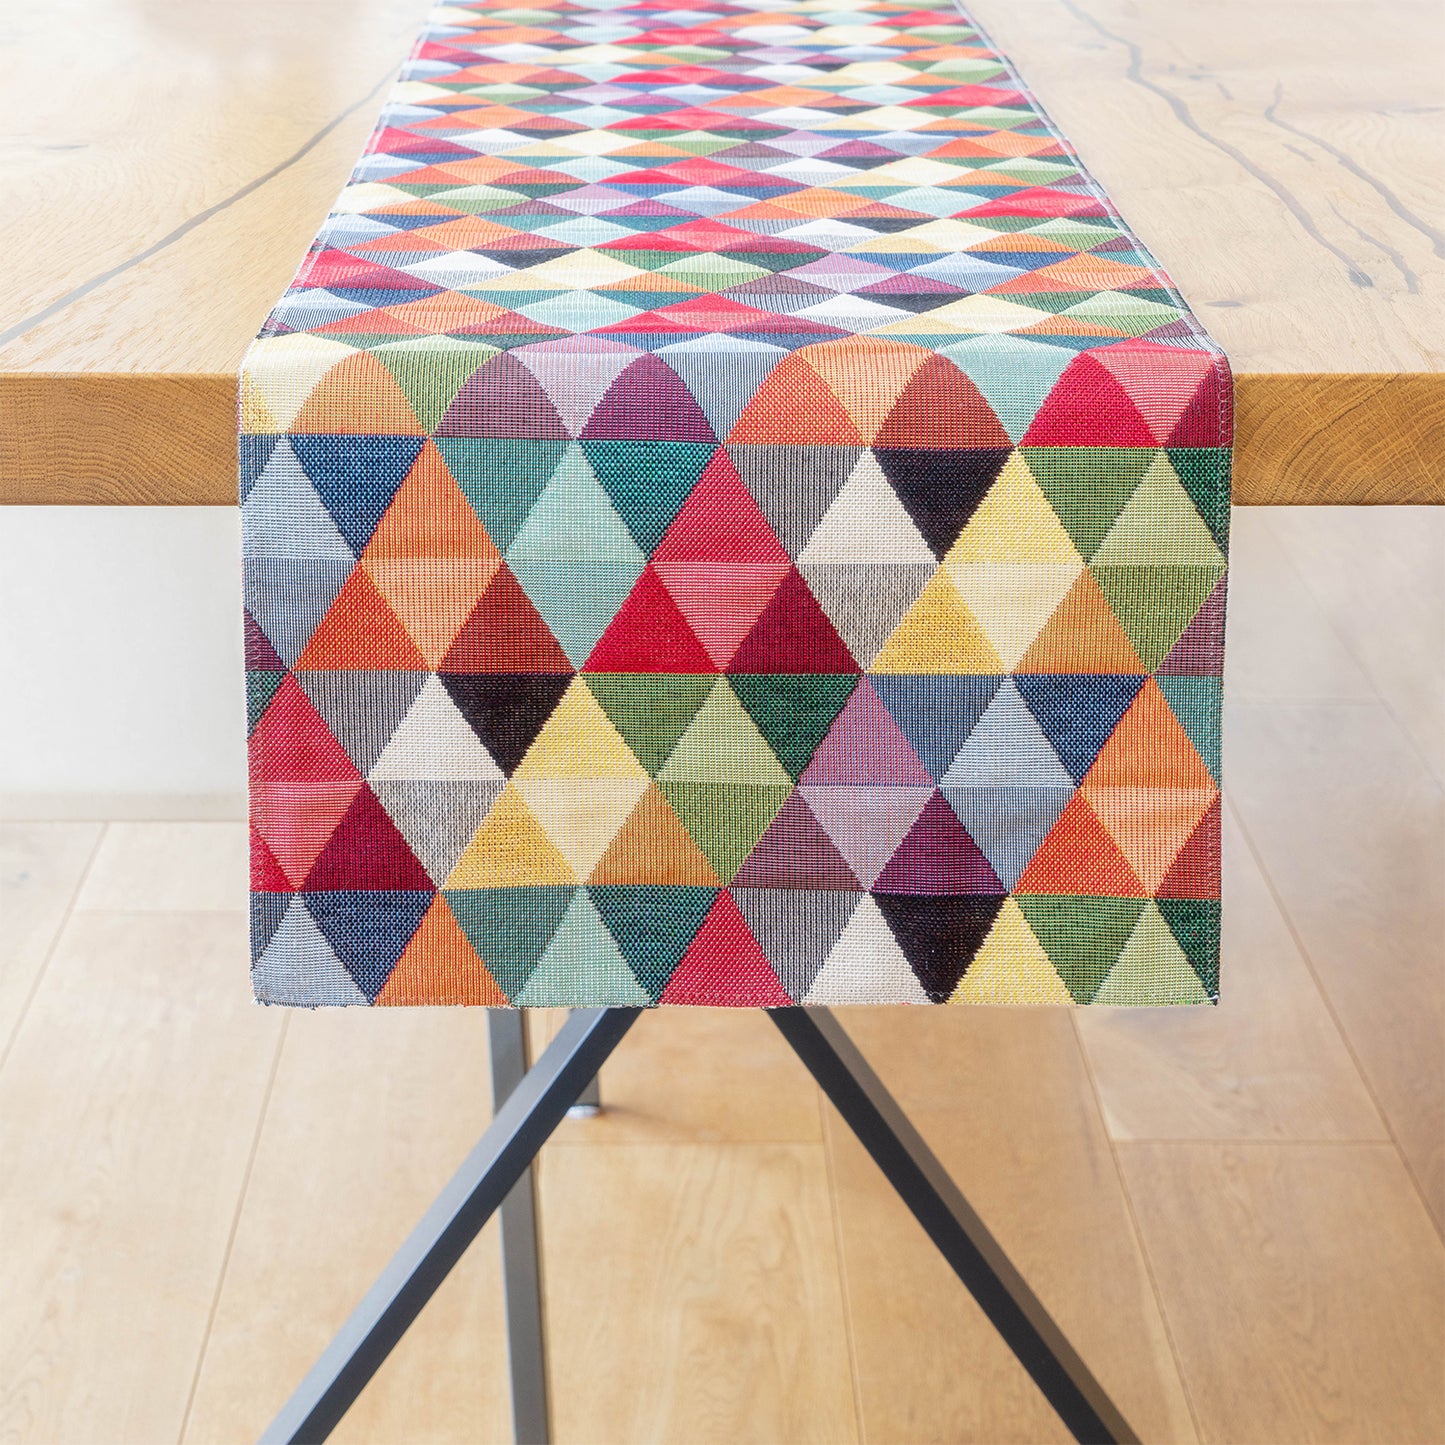 1x bunter Tischläufer, 30 x 180 cm, gewebtes Muster, pflegeleichtes Tischtuch